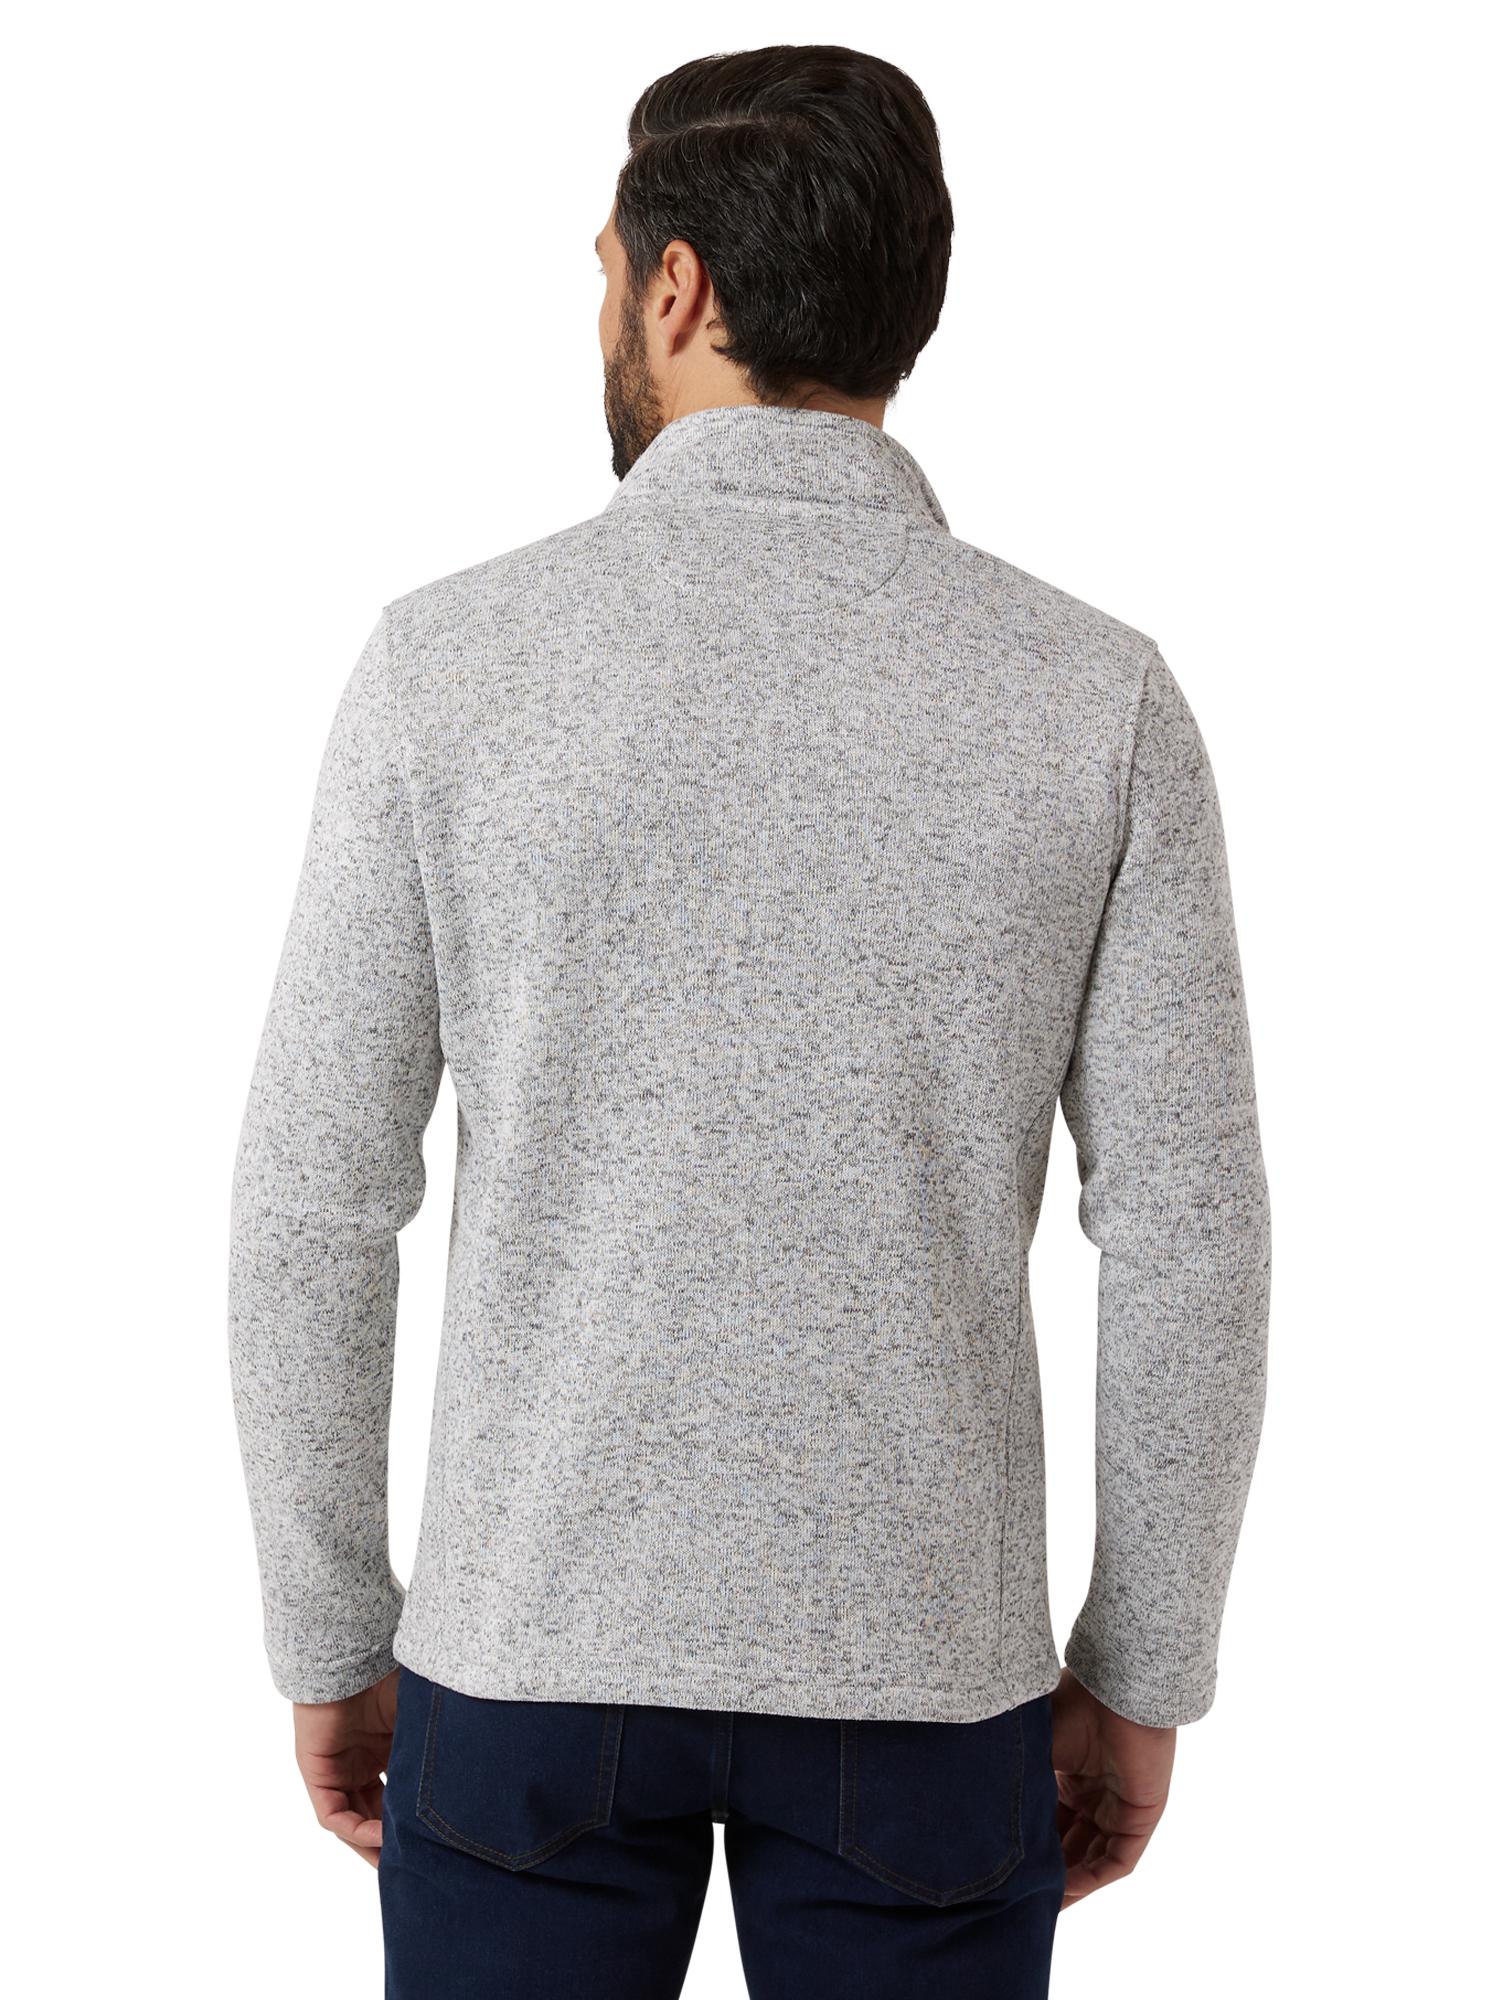 Chaps Men's & Big Men's Full Zip Sweater Fleece - image 2 of 7